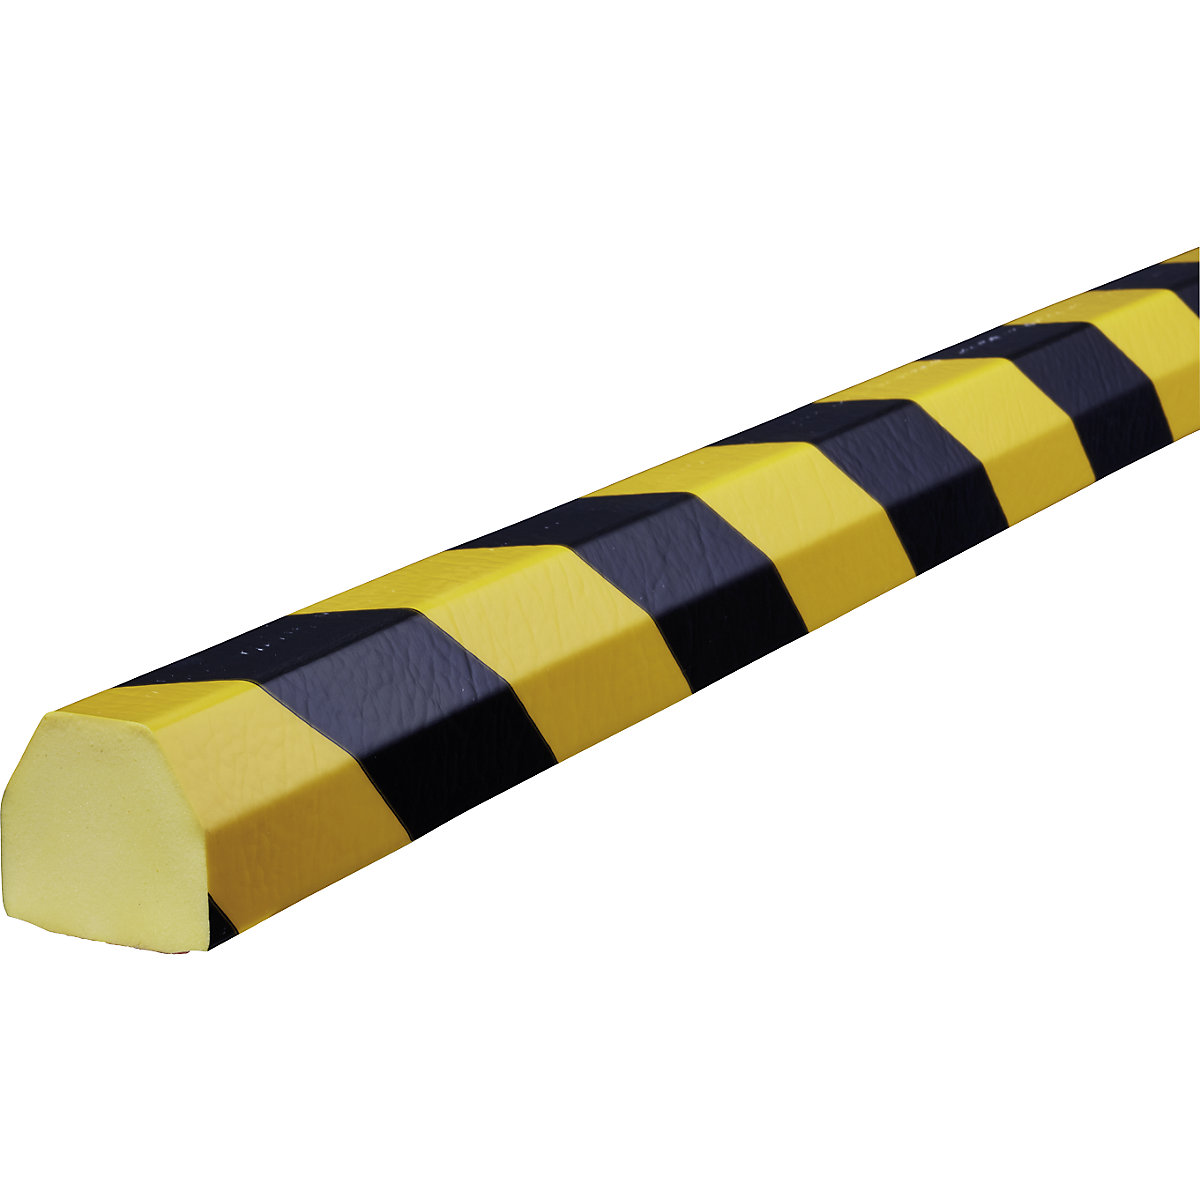 Knuffi®-oppervlaktebescherming – SHG, type CC, stuk van 1 m, zwart/geel-18